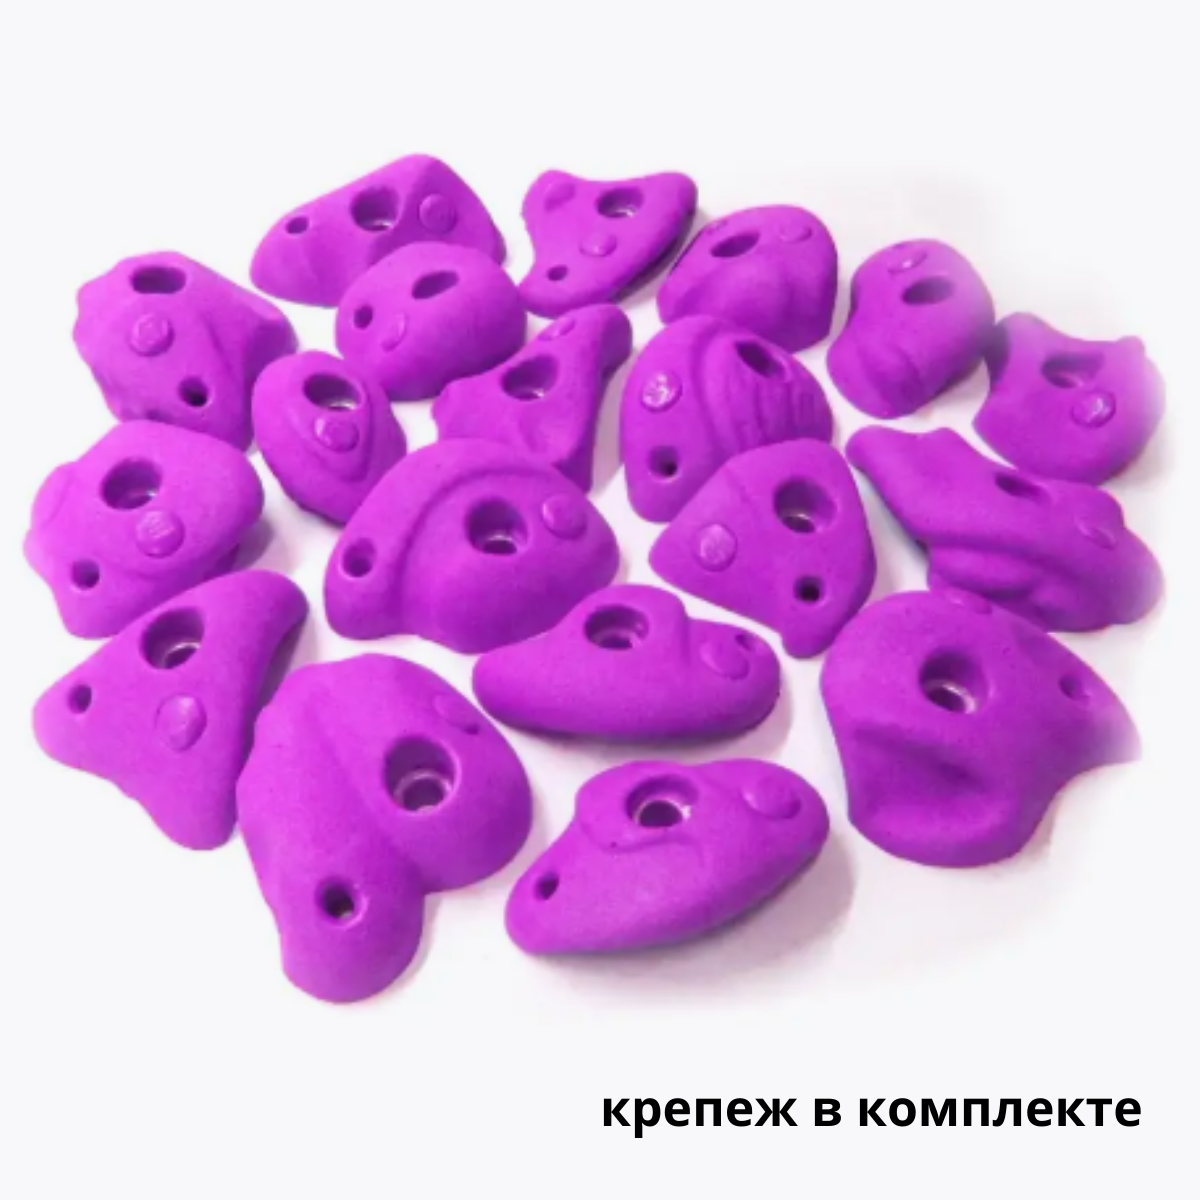 Зацепы для скалодрома детские Скалодромы Жужа Flexure фиолетовые 19 шт с крепежом